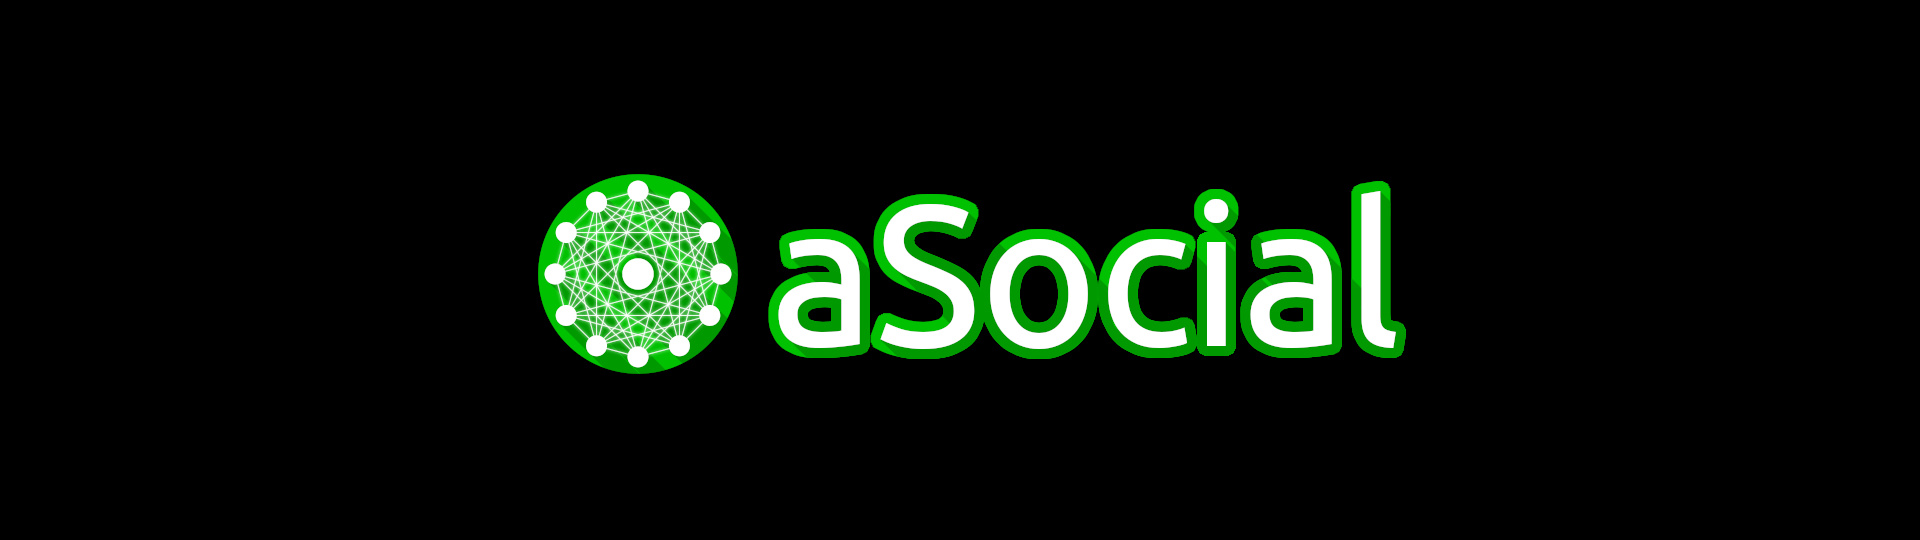 aSocial